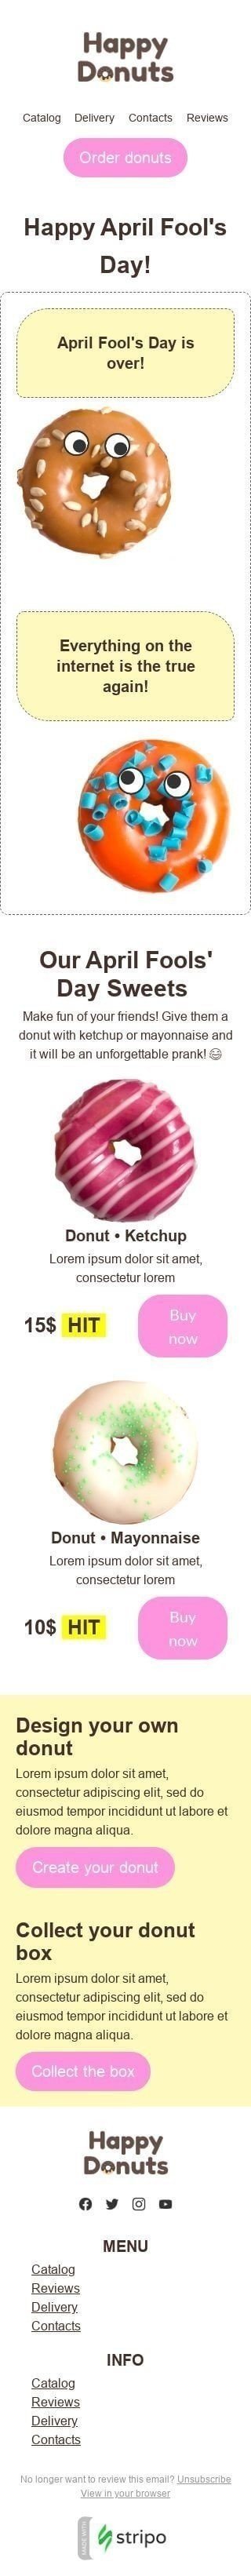 Modelo de E-mail de «Donuts com surpresa» de Dia da Mentira para a indústria de Alimentação Visualização de dispositivo móvel